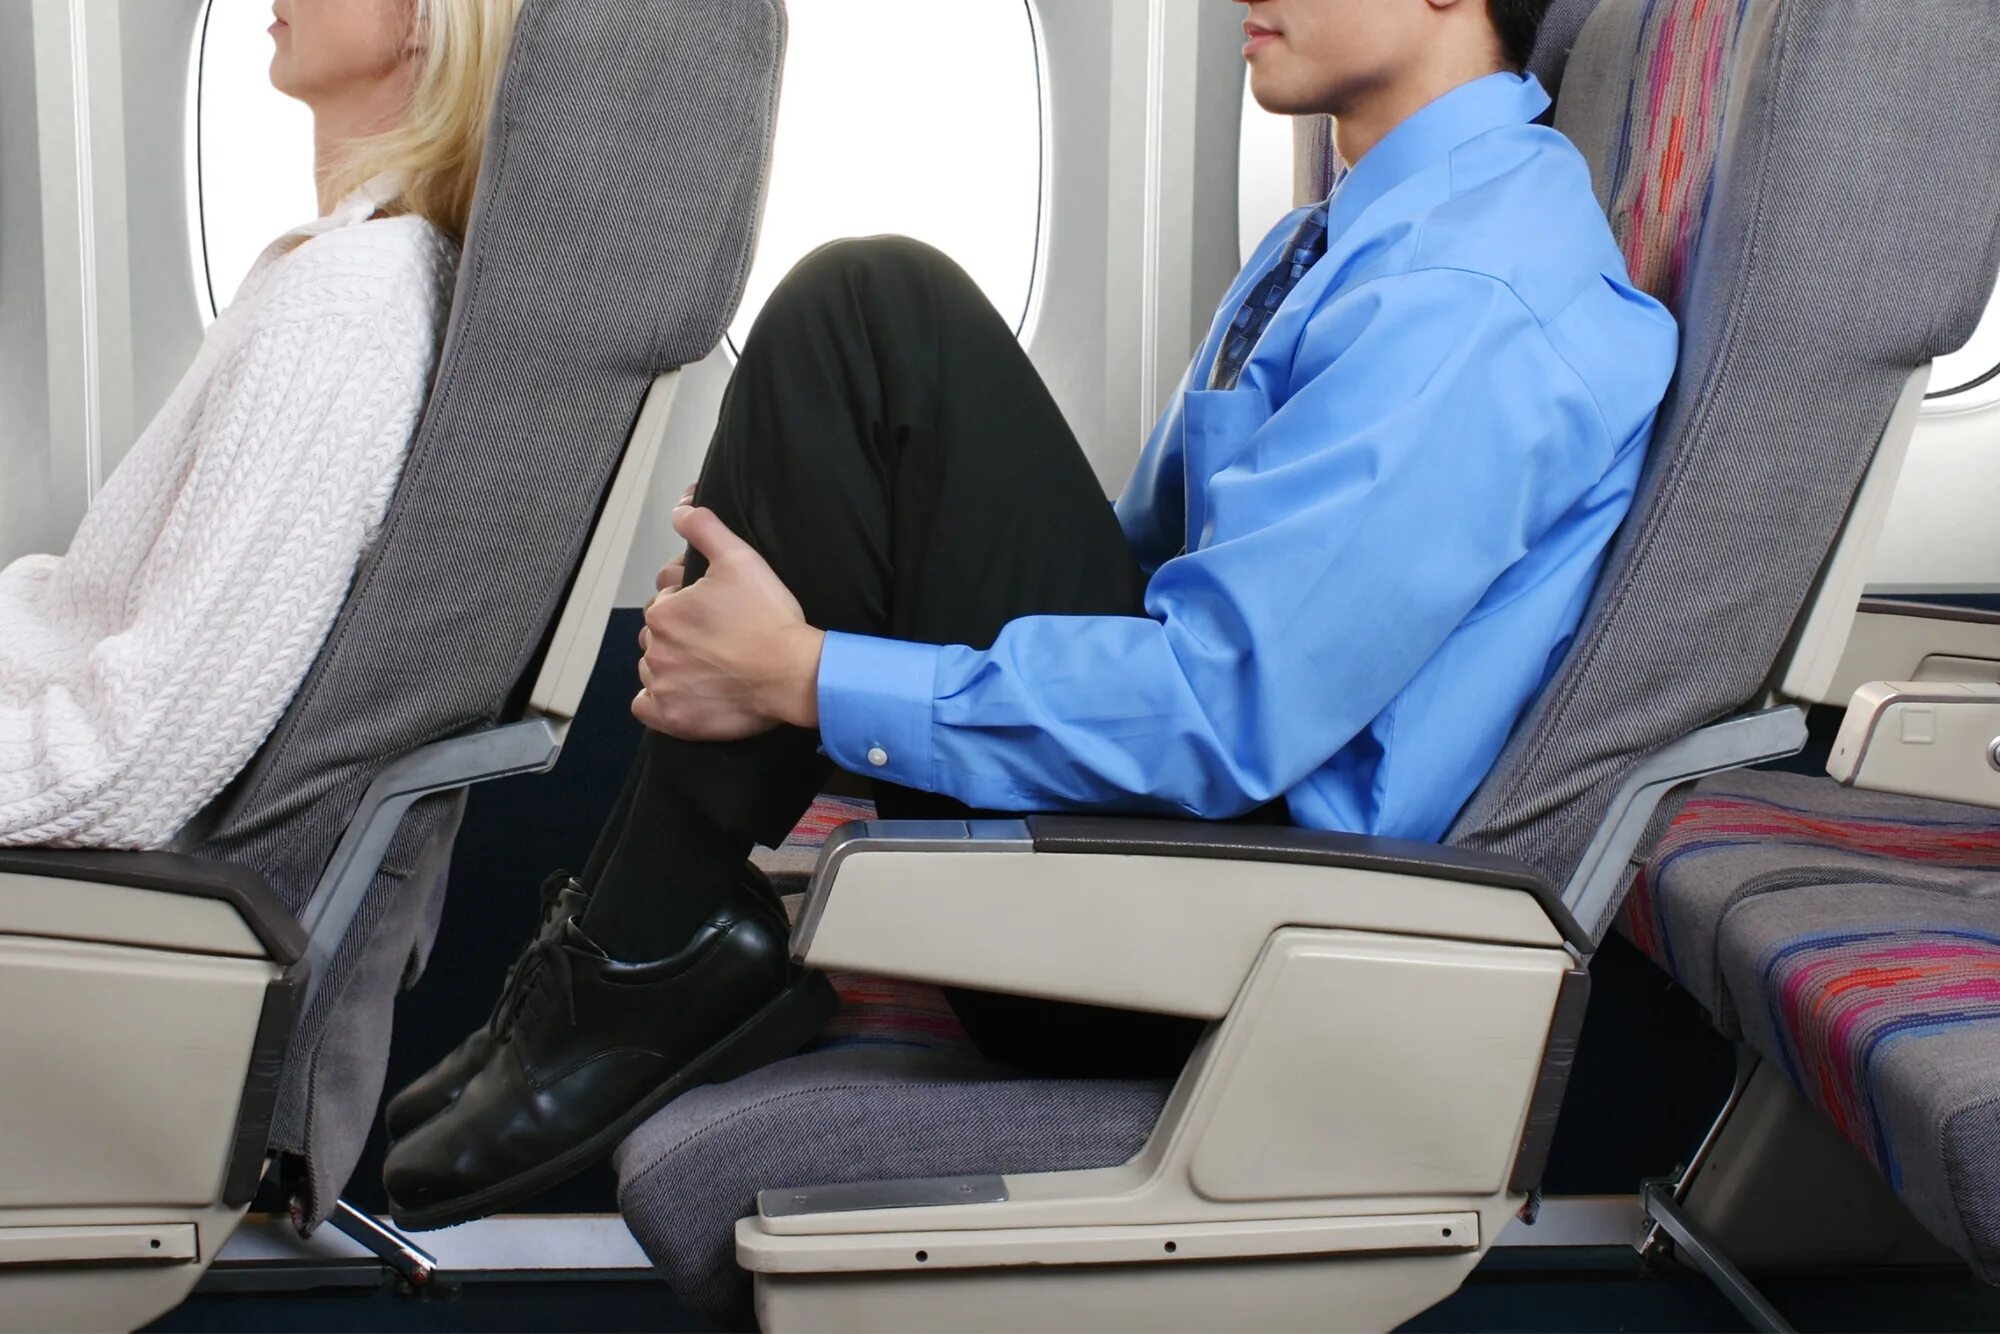 Sided v. Спинка кресла в самолете. Кресло "самолет". Пассажирские сиденья в самолете. Неудобные кресла в самолете.